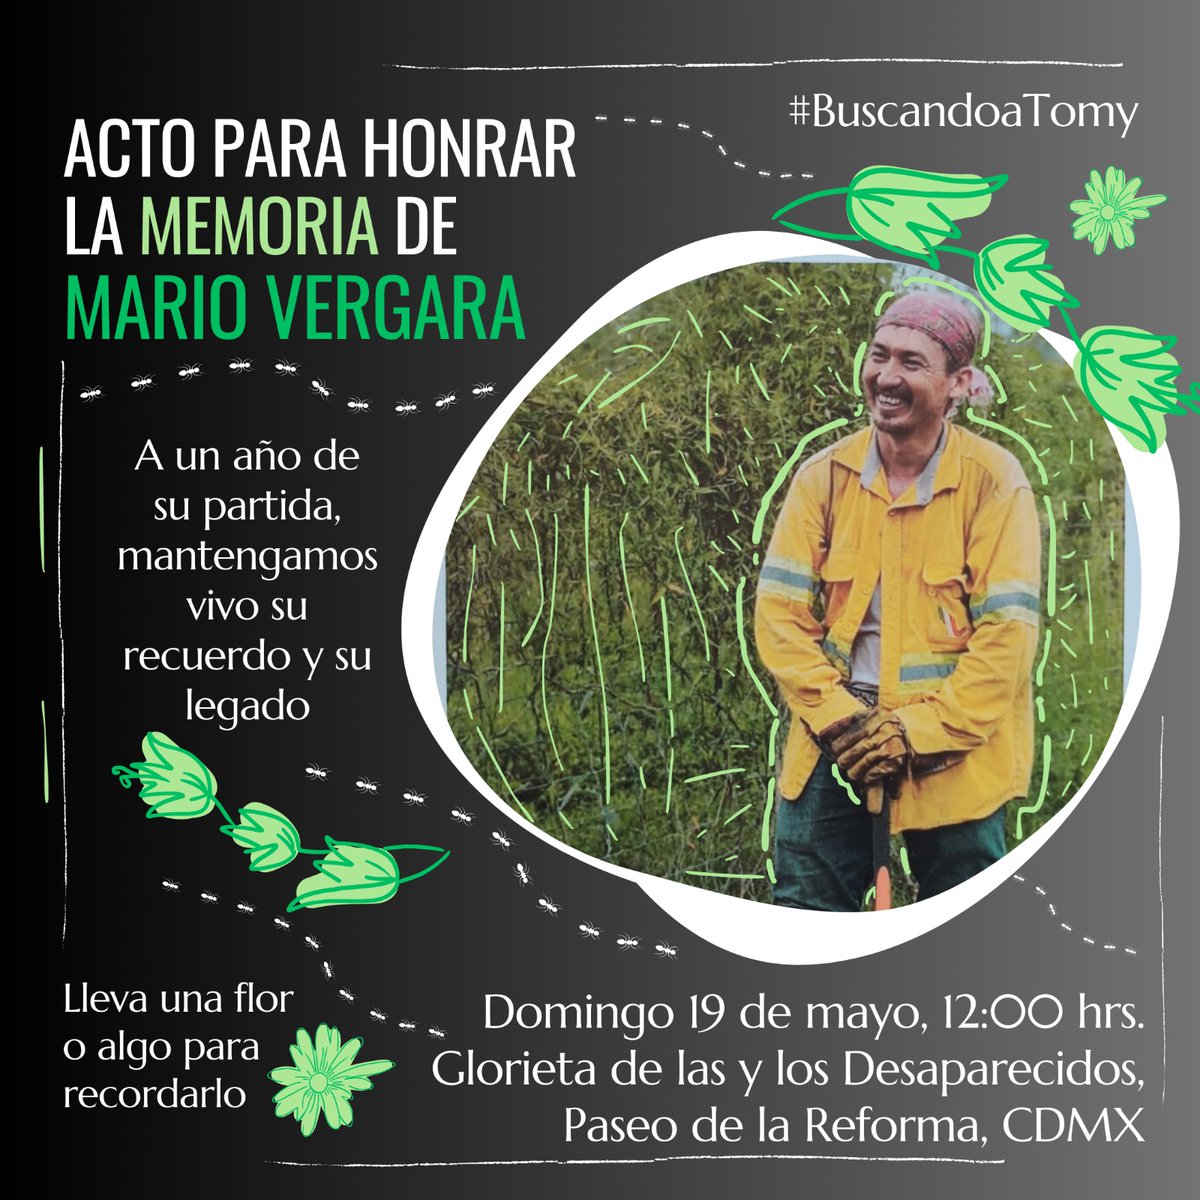 El 18 de mayo de 2023 murió Mario Vergara Hernández, quien buscaba a su hermano Tomás desaparecido el 5 de julio de 2012 en Huitzuco, Guerrero. Acompáñanos este domingo a recordar la búsqueda de Mario a un año de su muerte.